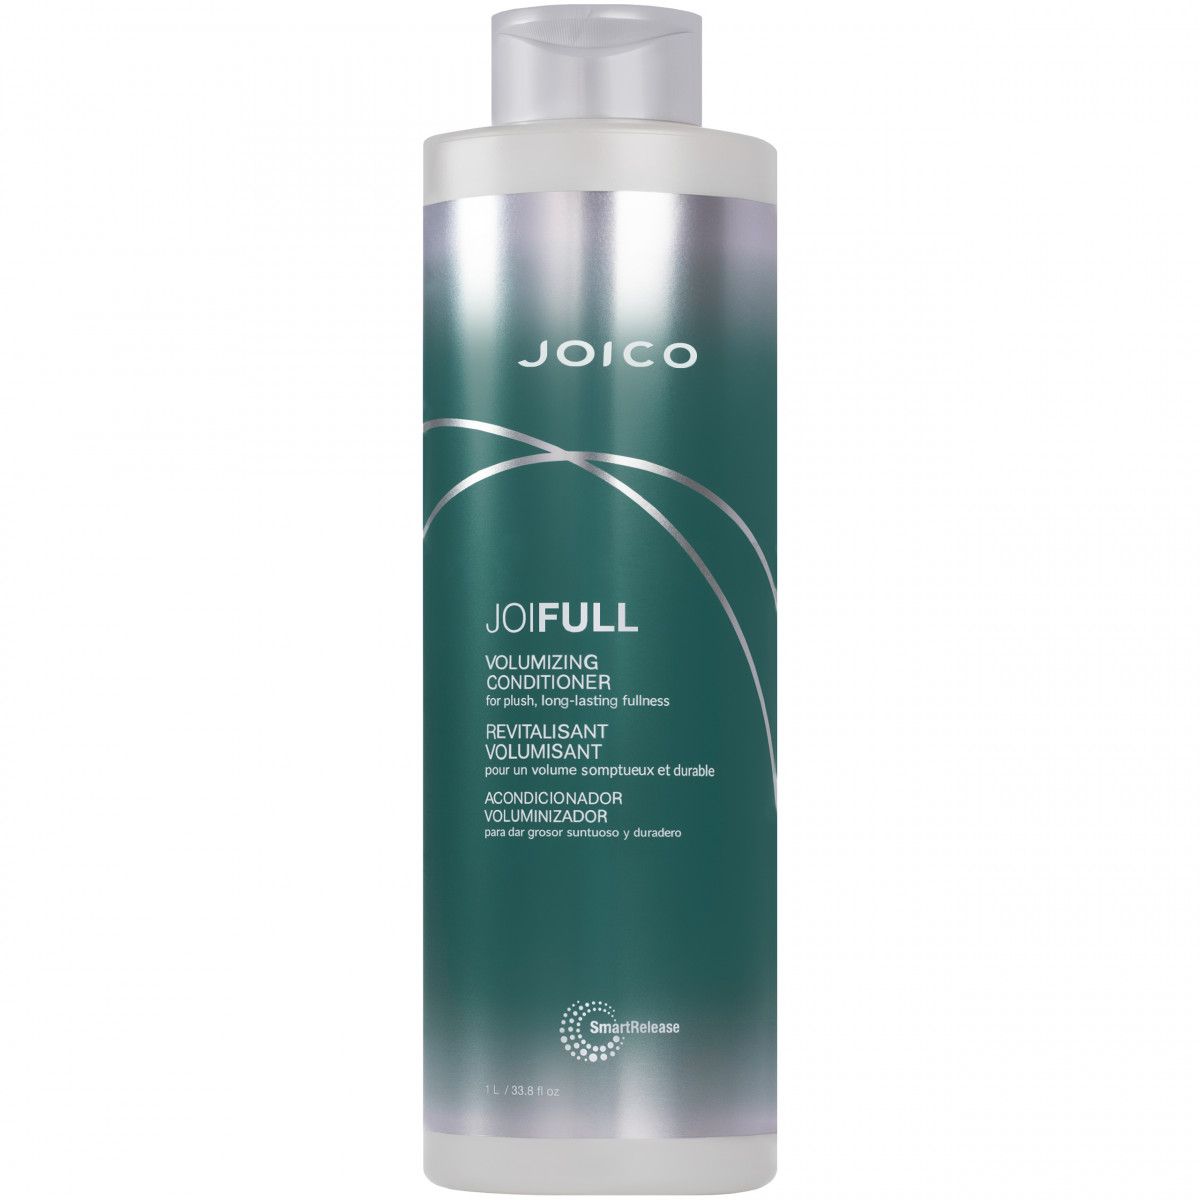 Joico Joifull Volumizing – odżywka do włosów cienkich i delikatnych, 1000ml